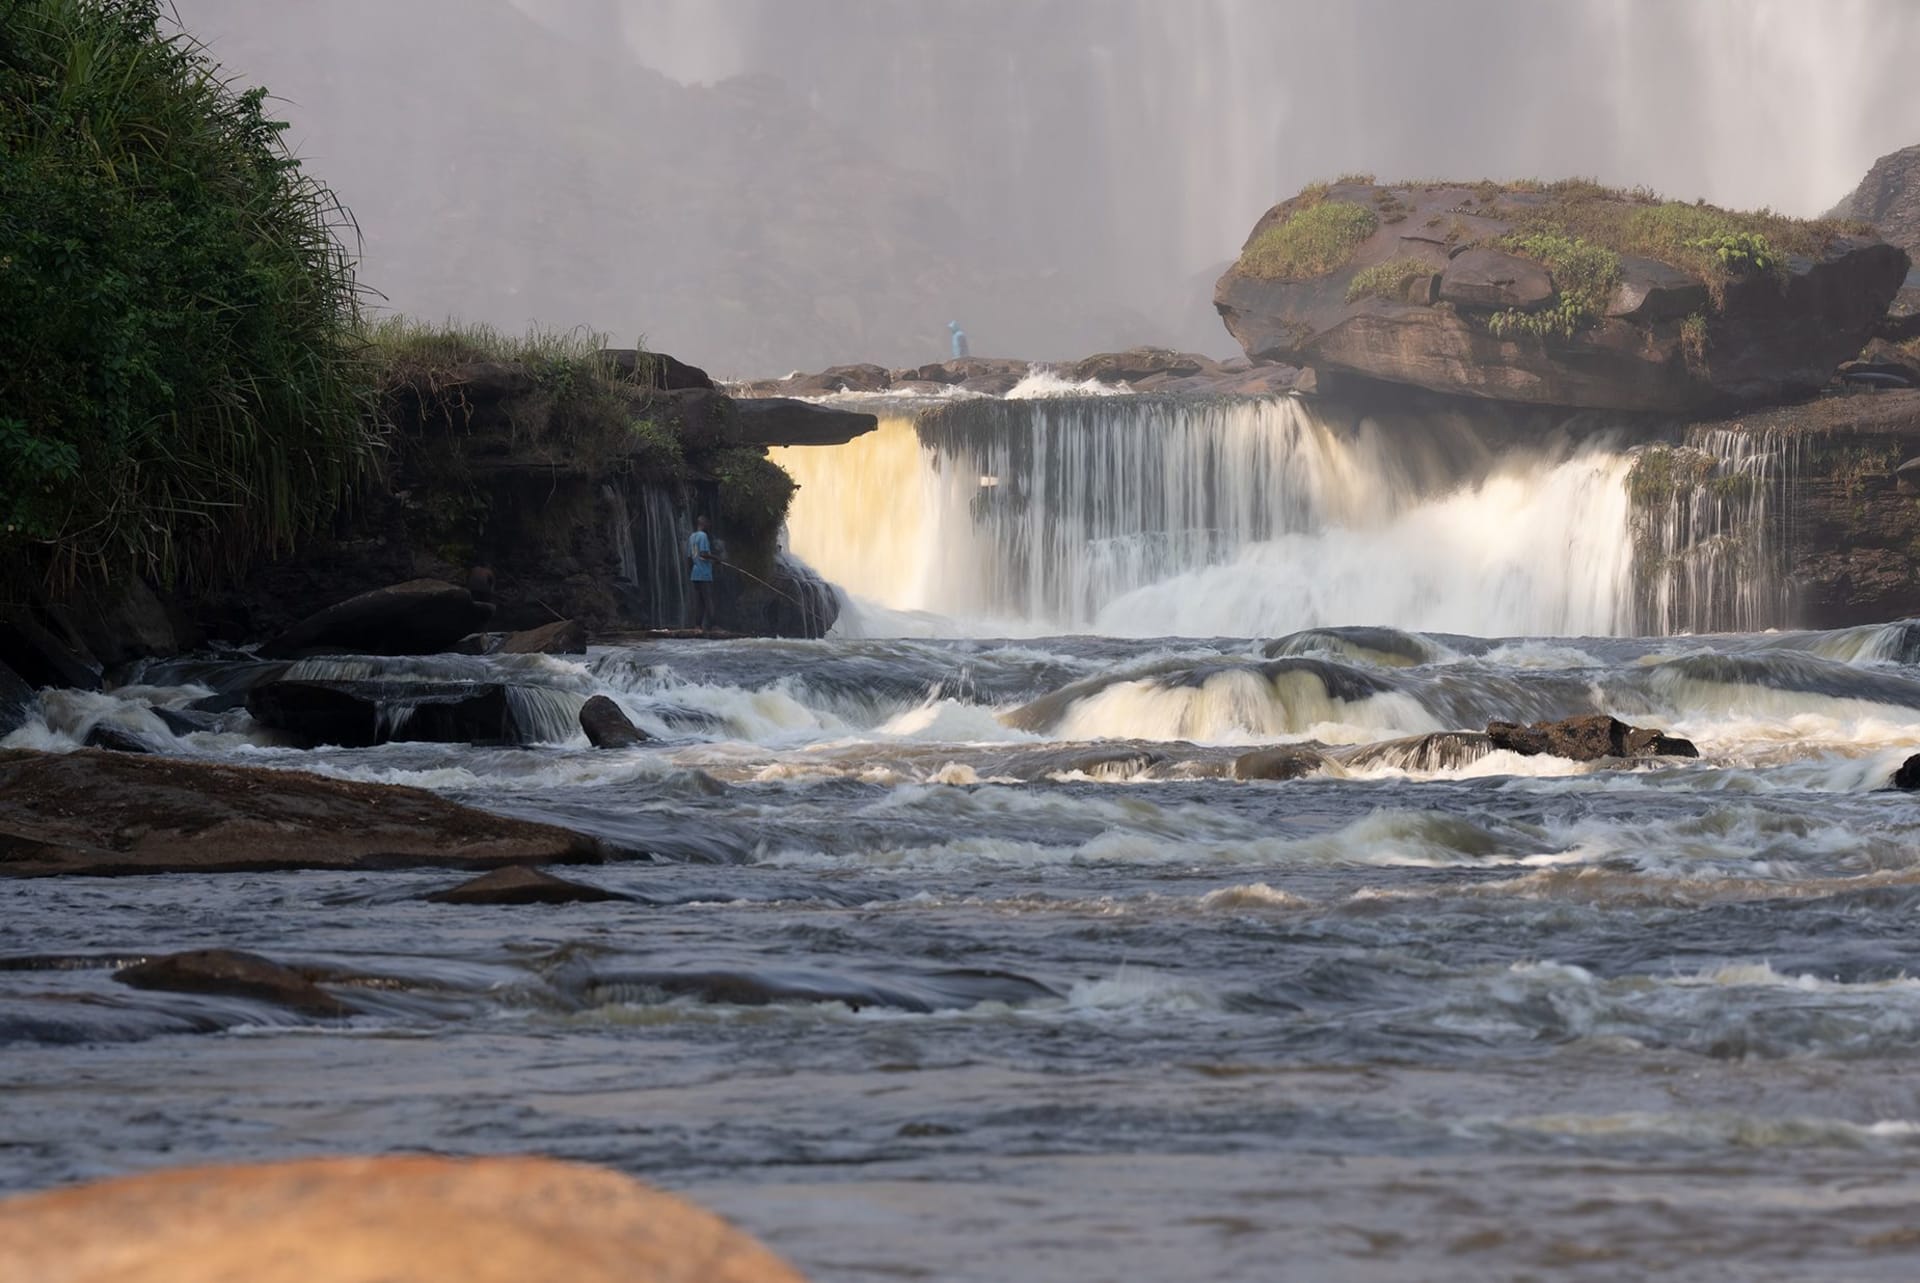 Vodopády Kalandula jsou jedny z největších v Africe, i když jsou o třetinu menší než Viktoriiny vodopády.